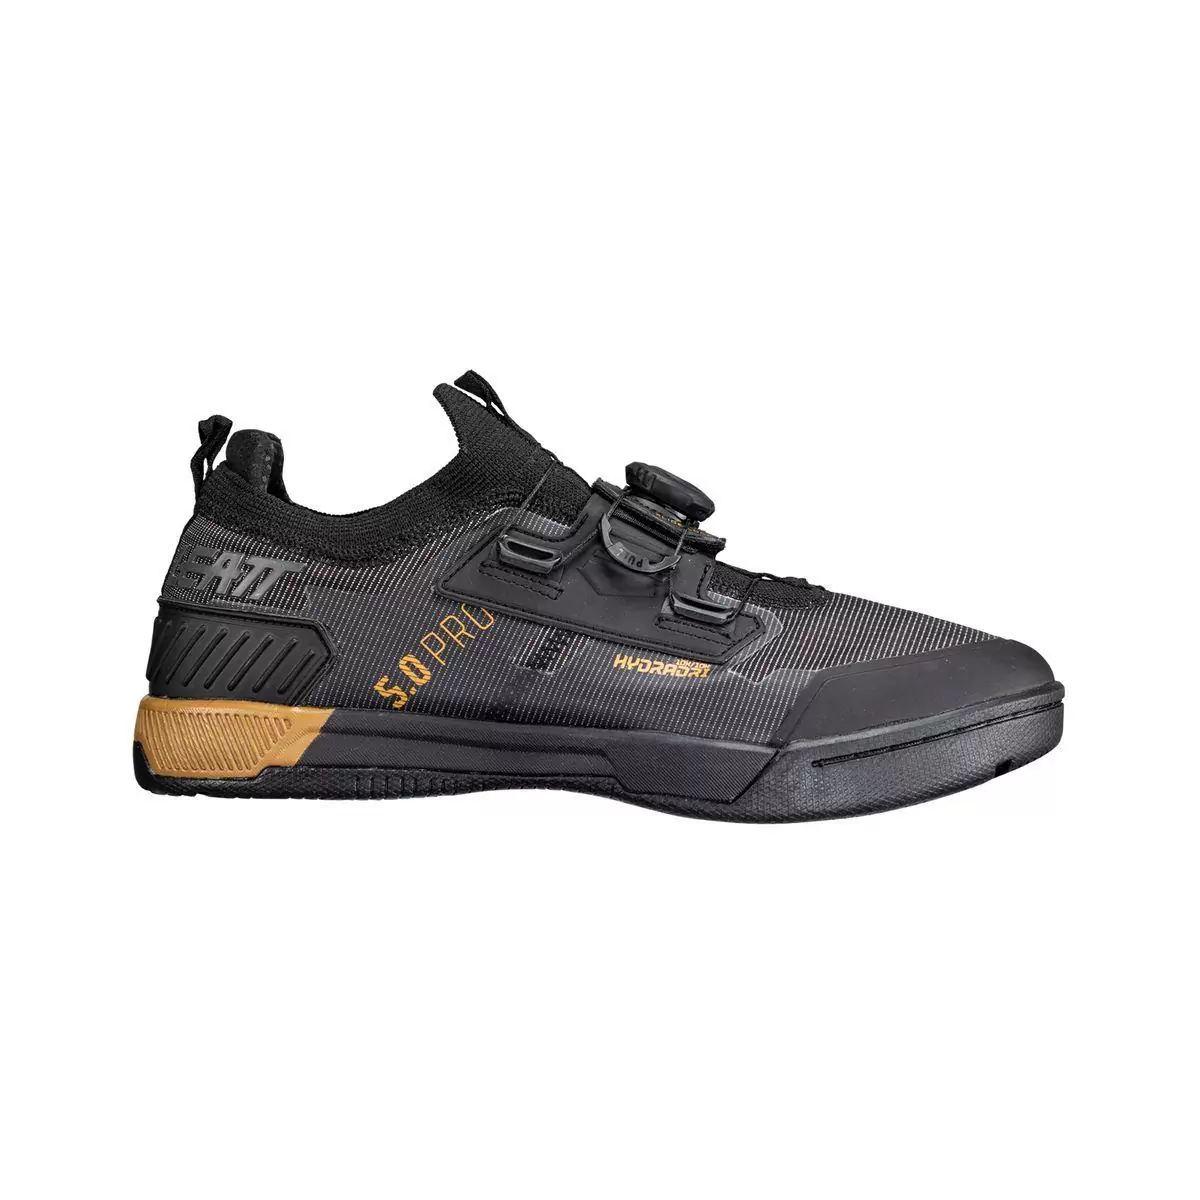 Chaussures VTT imperméables HydraDri ProClip 5.0 noir taille 44.5 #1